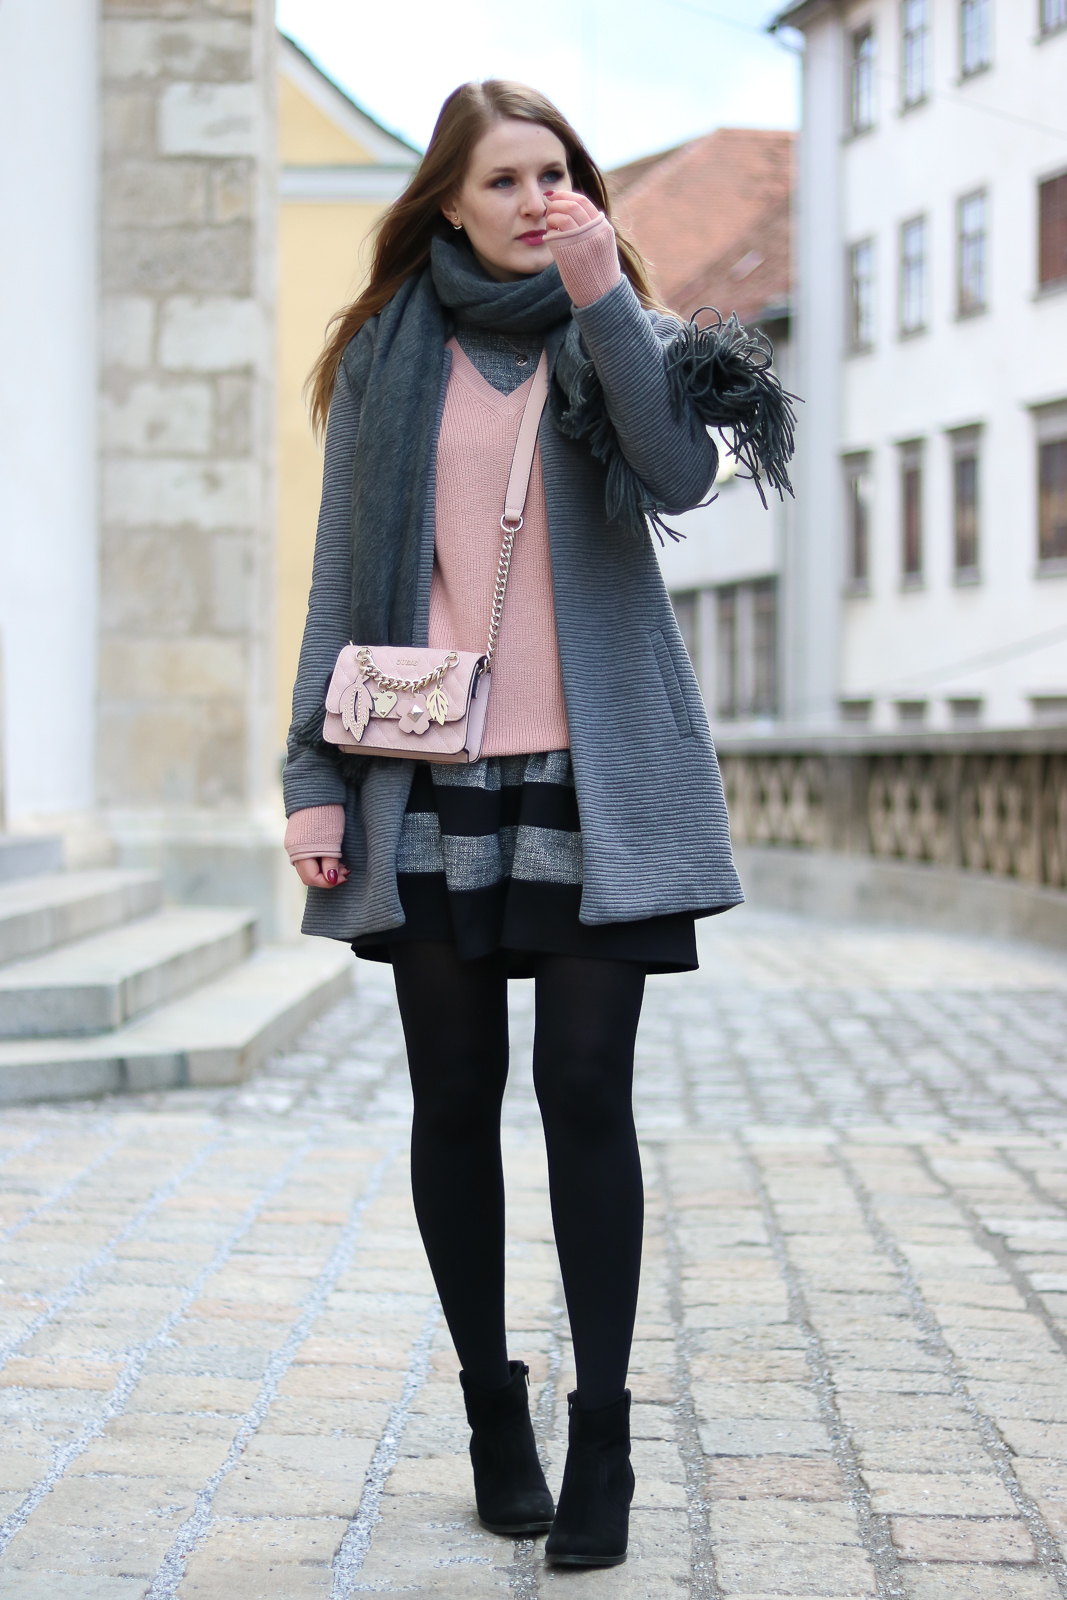 Kleider winterlich stylen - mit diesen Tricks gelingt es dir - Kleider im Winter tragen - Kleider kombinieren - graues Kleid Kombi - Kleid kombinieren - wie kombiniere ich ein kurzes Kleid im Winter - Kleid kombinieren Winter - graues Kleid stylen - welche Schuhe zu grauem Kleid - Layering Look mit Kleid - Layering Look Winter - Outfit - Trend - Grau-rosa Kombination - Rosa Pullover kombinieren - Fashionladyloves by Tamara Wagner - Fashion Blog - Mode Blog aus Graz Österreich